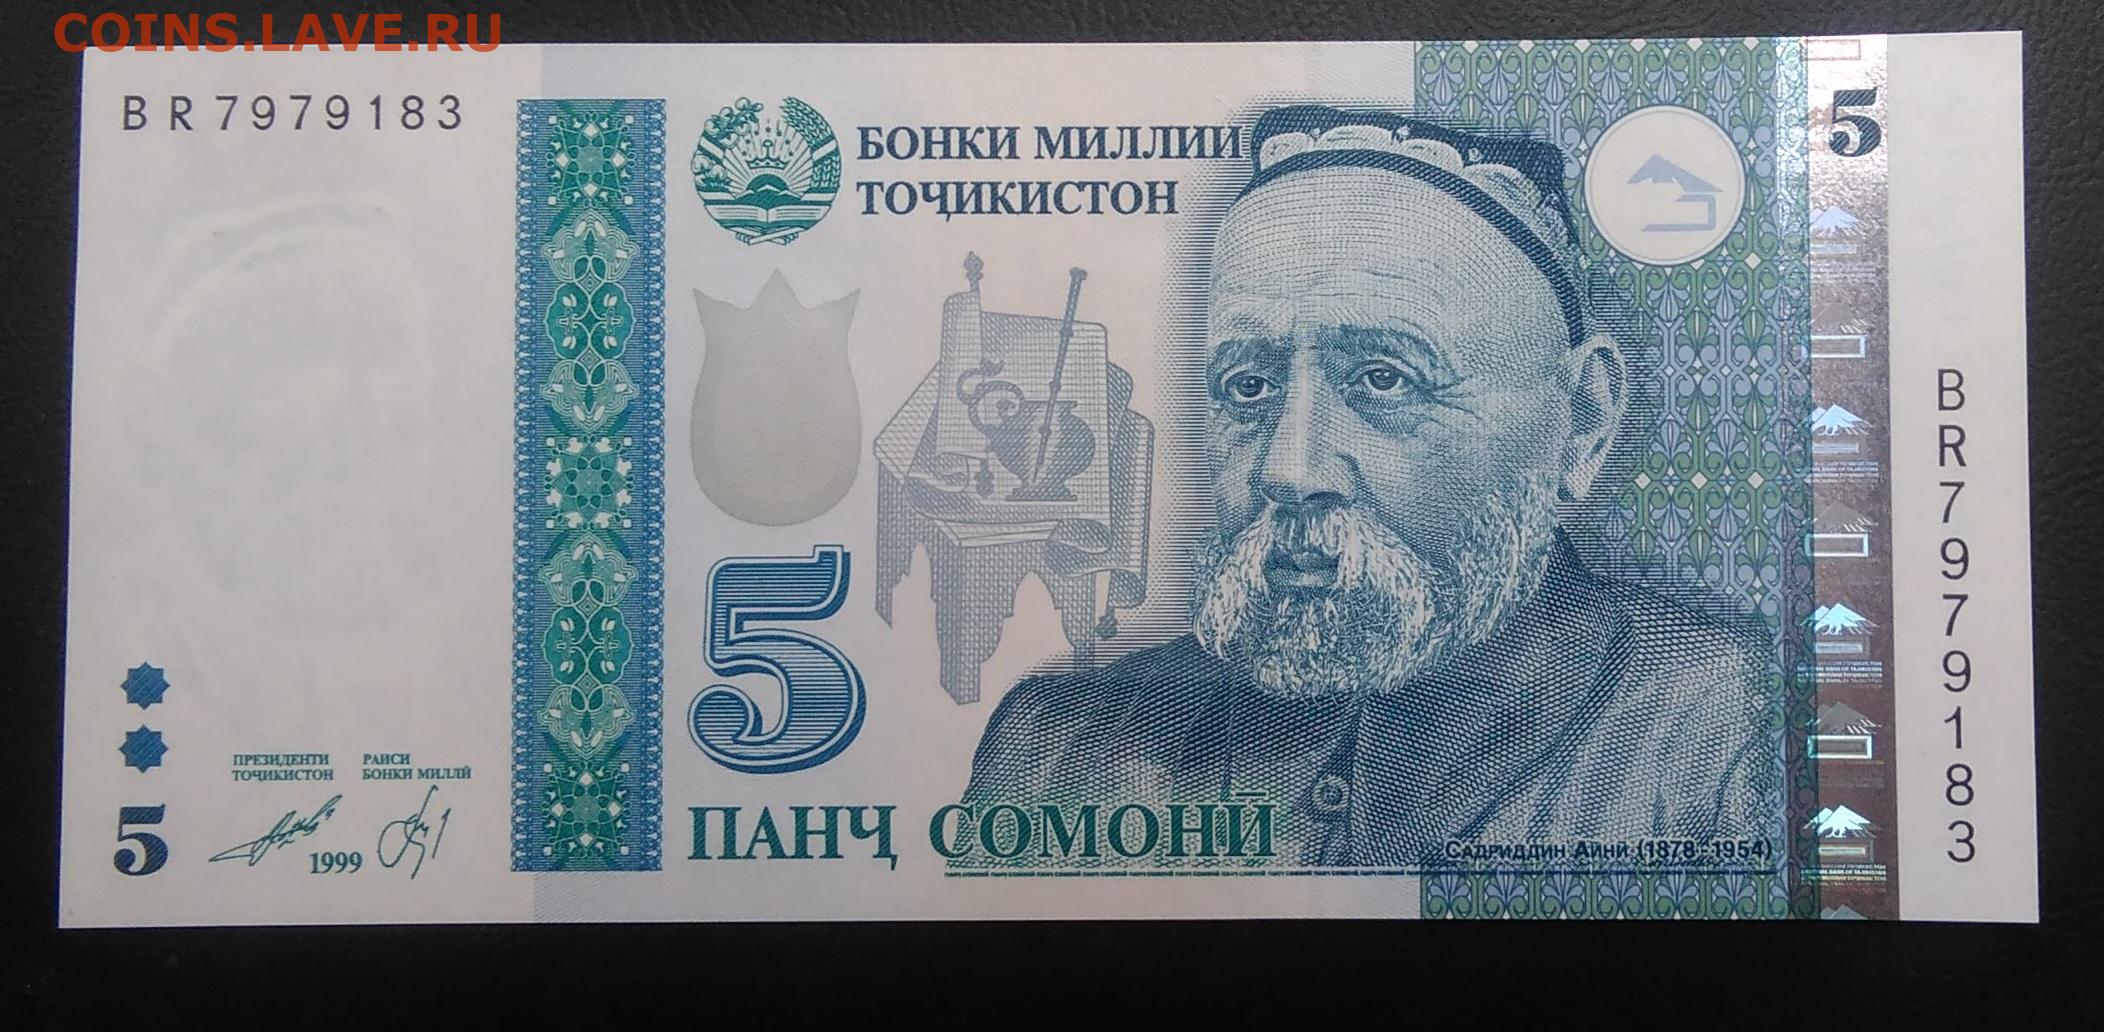 500000 рублей в таджикских сомони. Банкноты Таджикистана: 5 Сомони. Купюры Таджикистана 1000 Сомони. Банкнота 10 Сомони 1999 год Таджикистан. Купюра Таджикистана 500 Сомони.